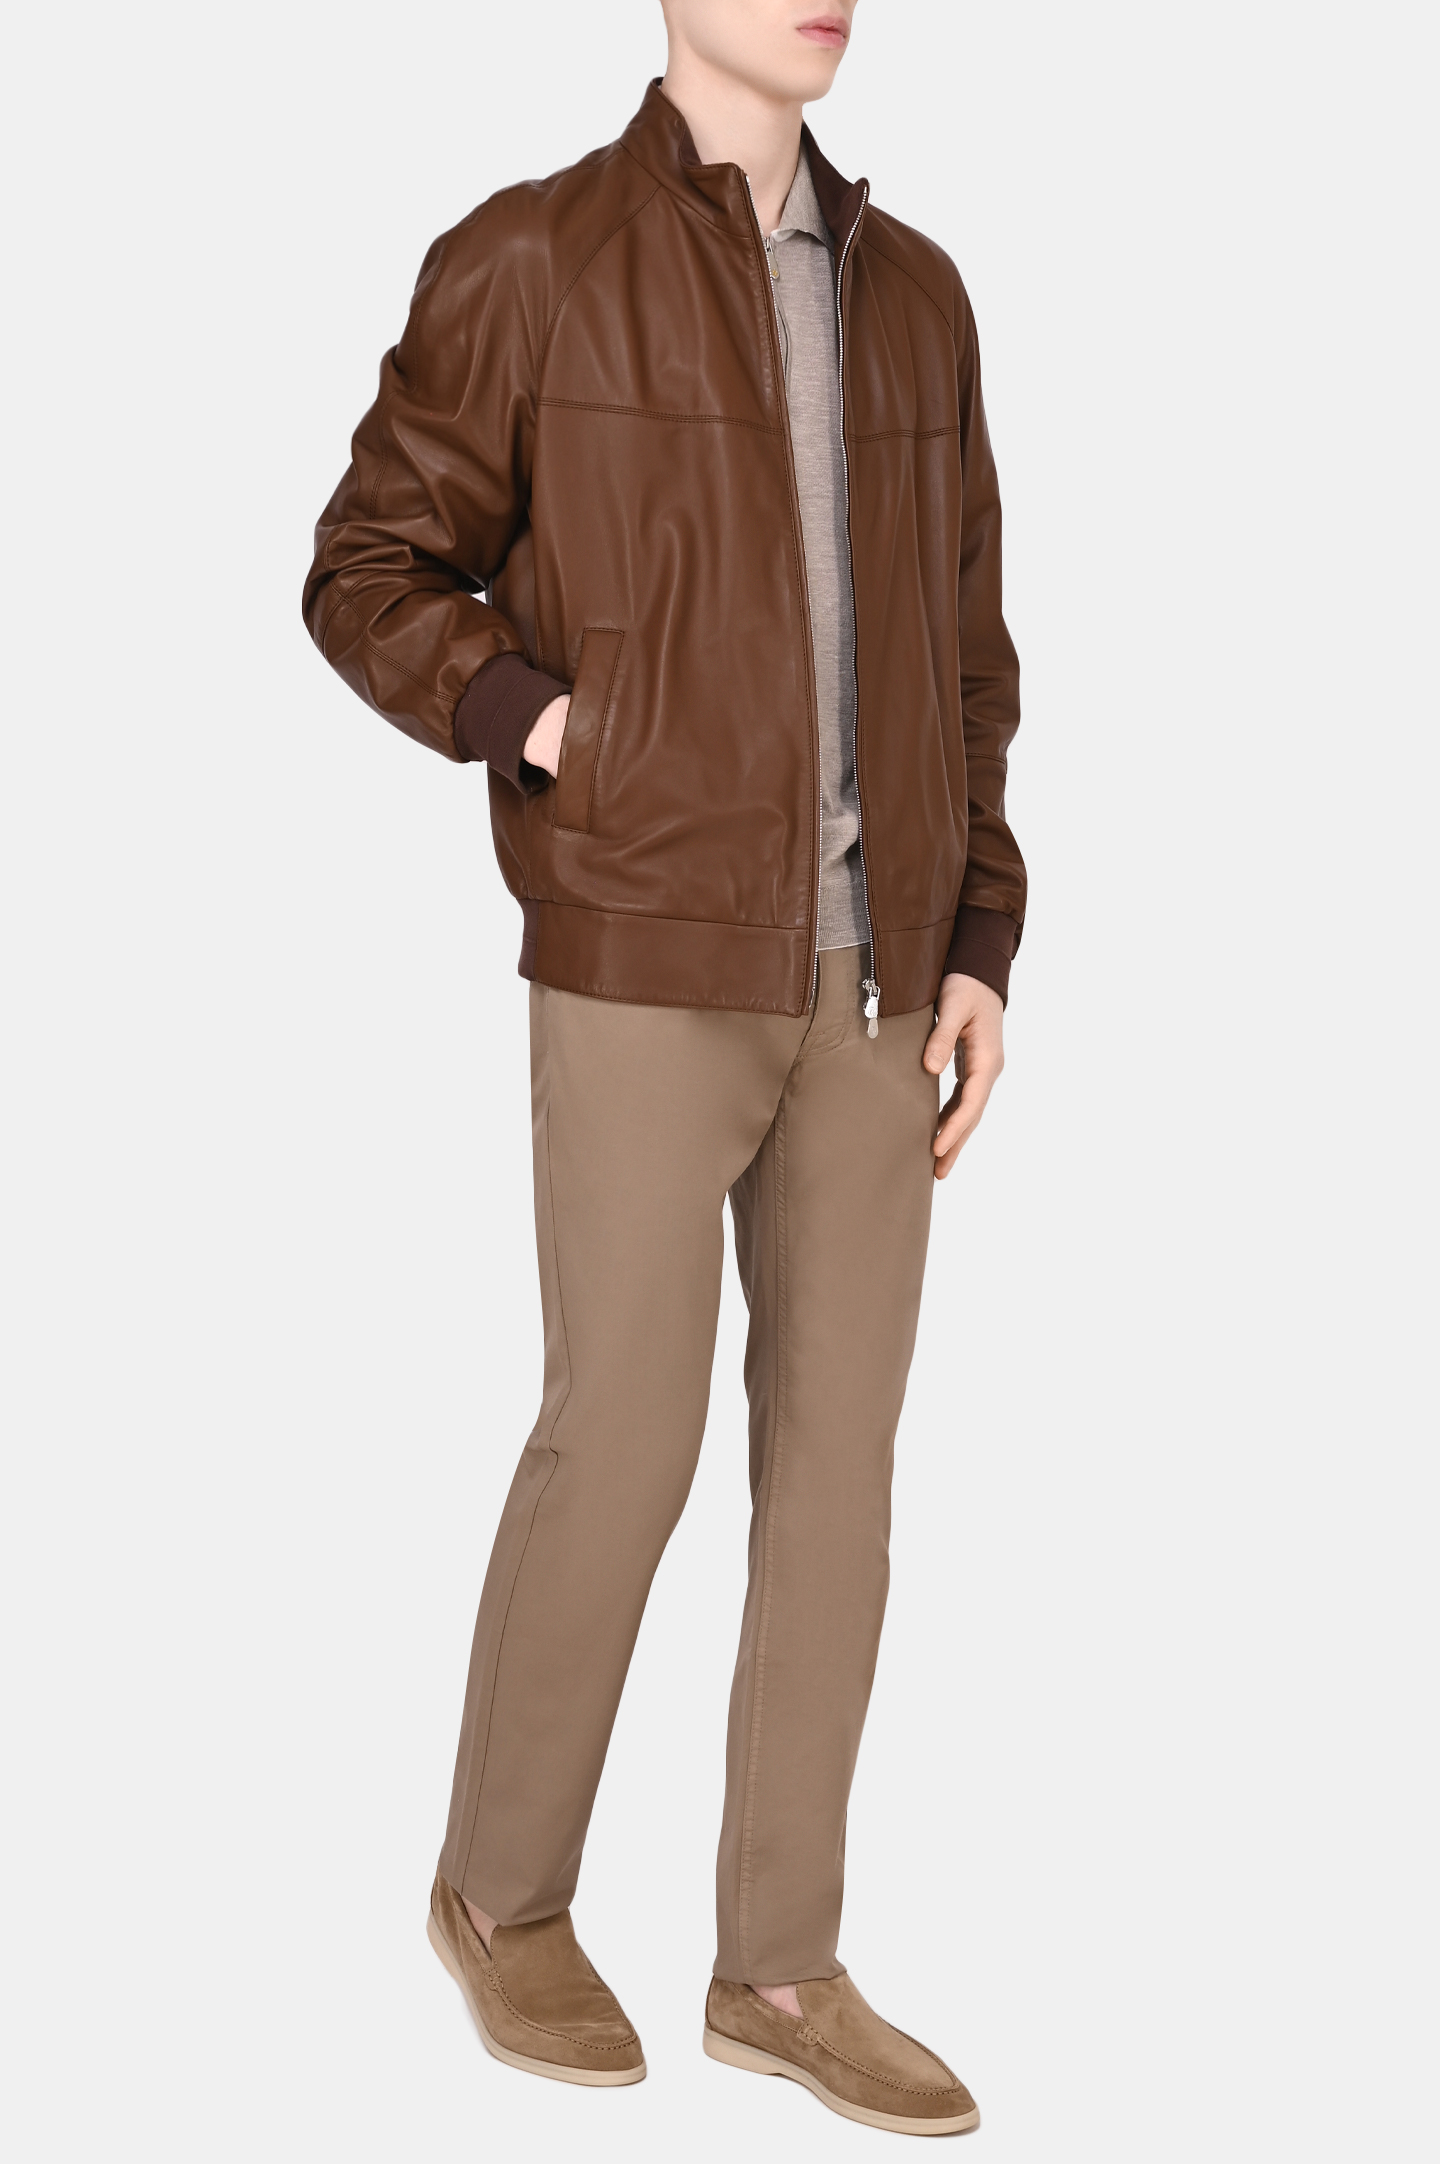 Куртка BRUNELLO  CUCINELLI MPTAN1693, цвет: Коричневый, Мужской